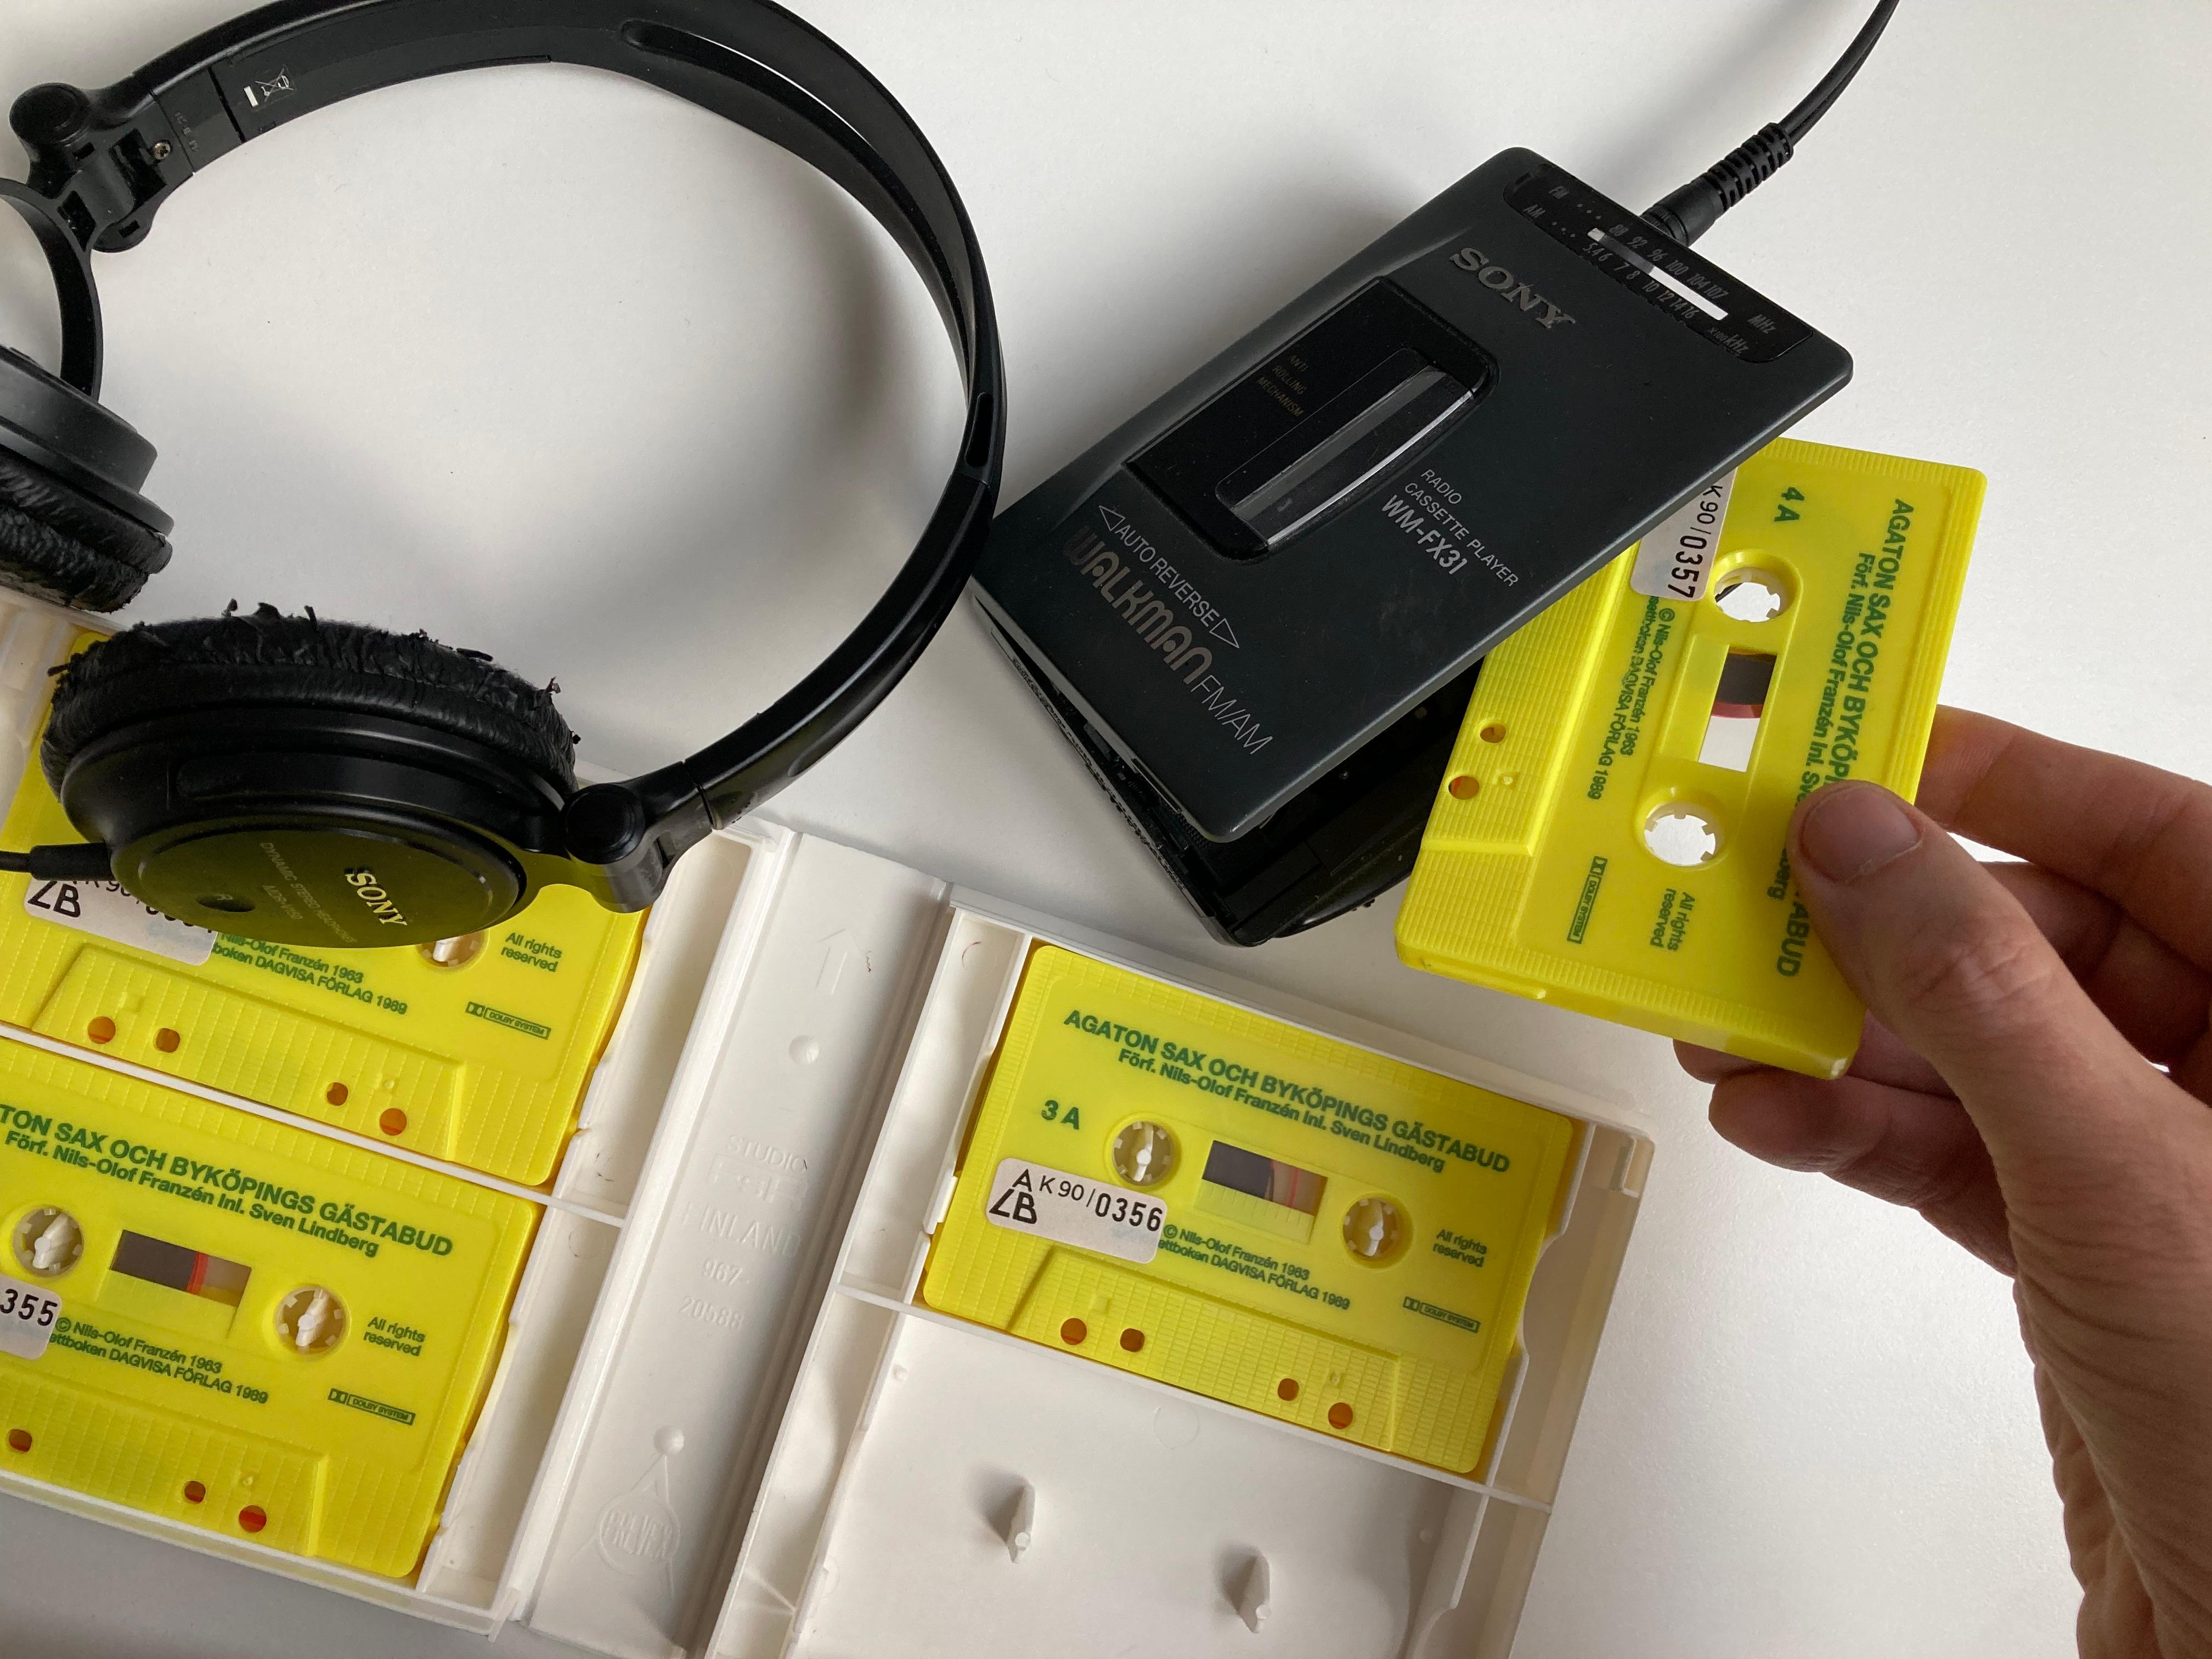 En hand sätter in ett gult kassettband i en bärbar kassettspelare med hörlurar.